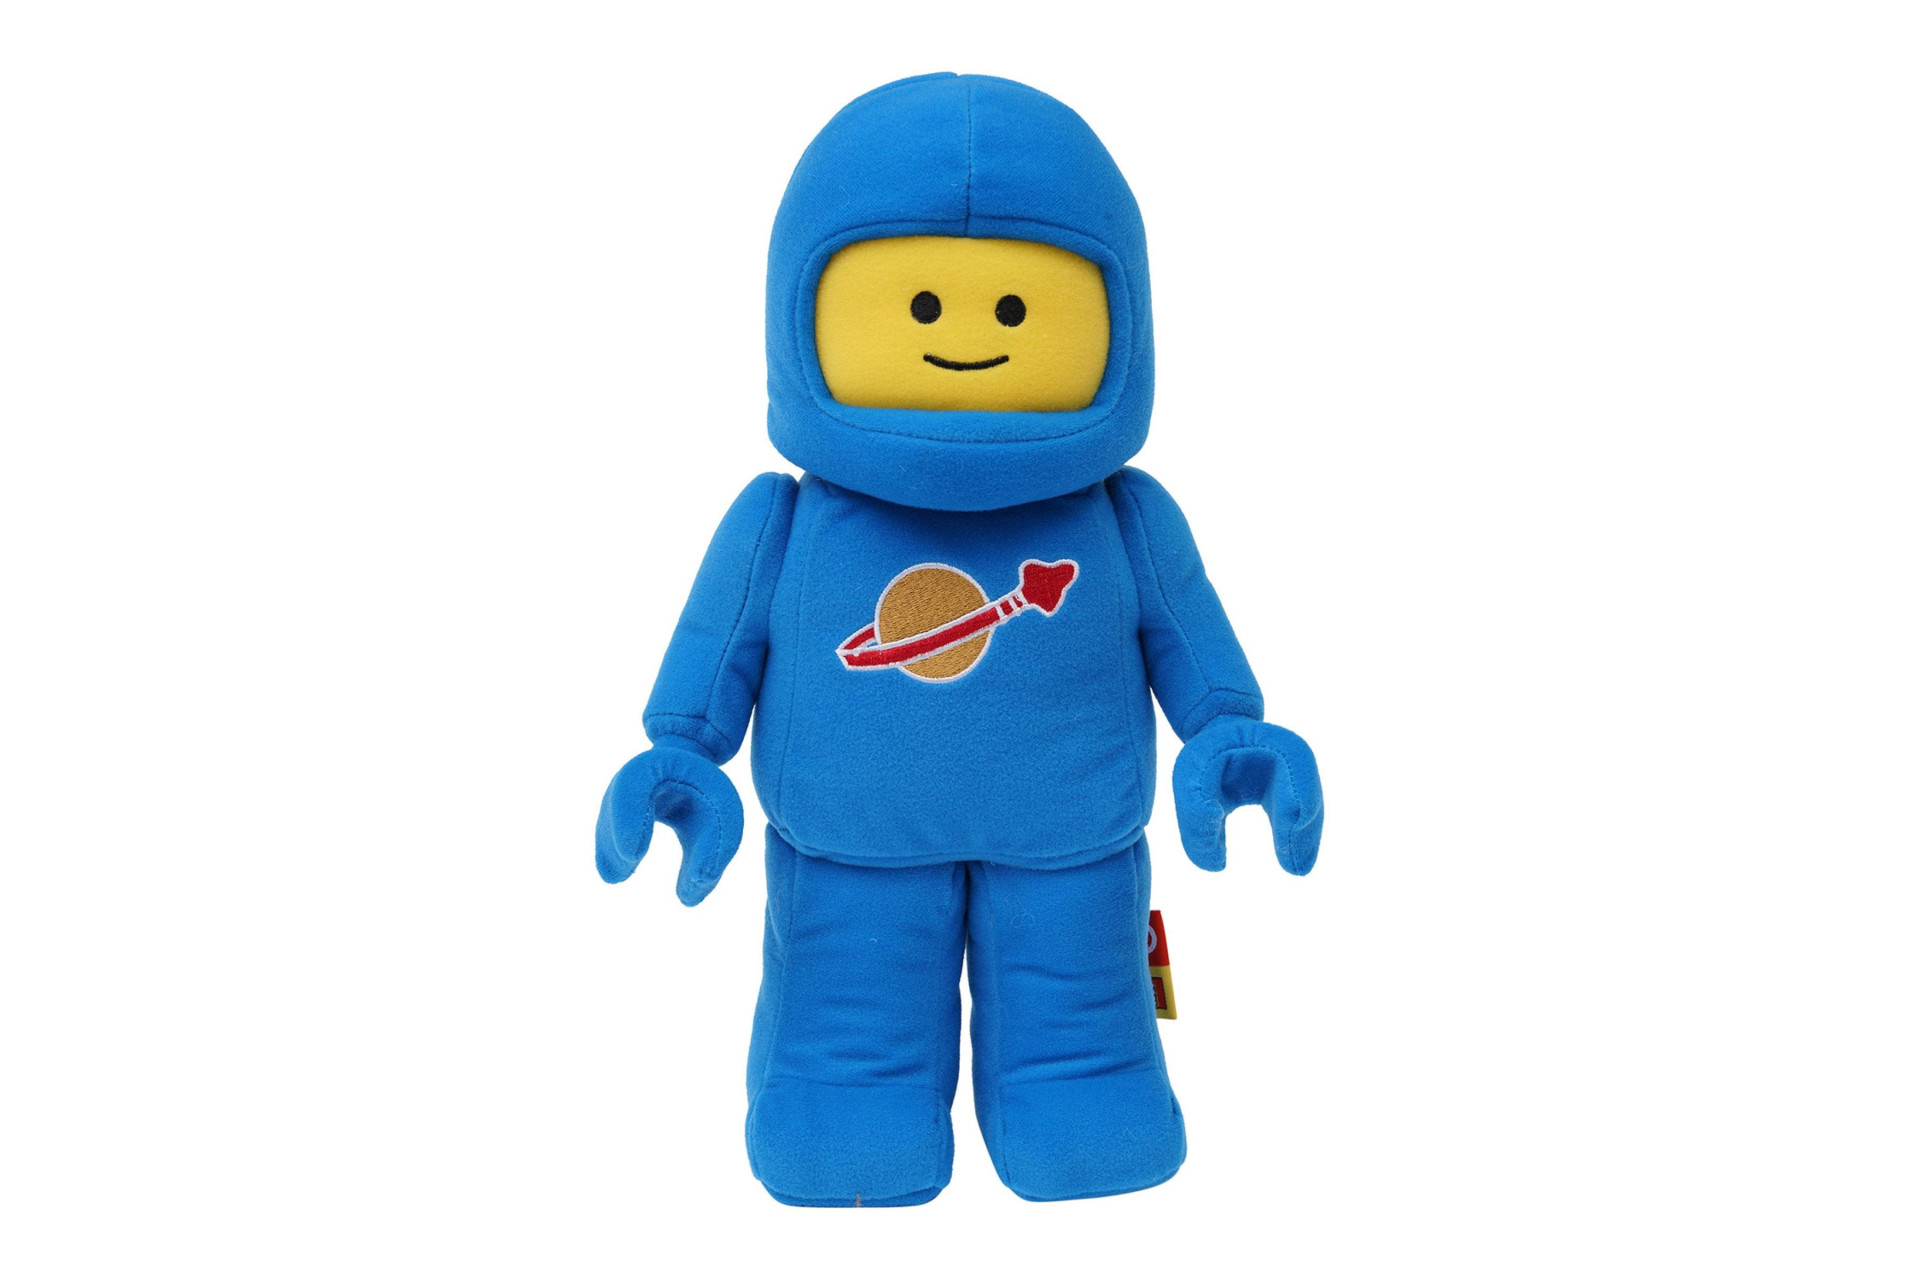 Acheter Lego 5008785 Peluche astronaute - Bleu